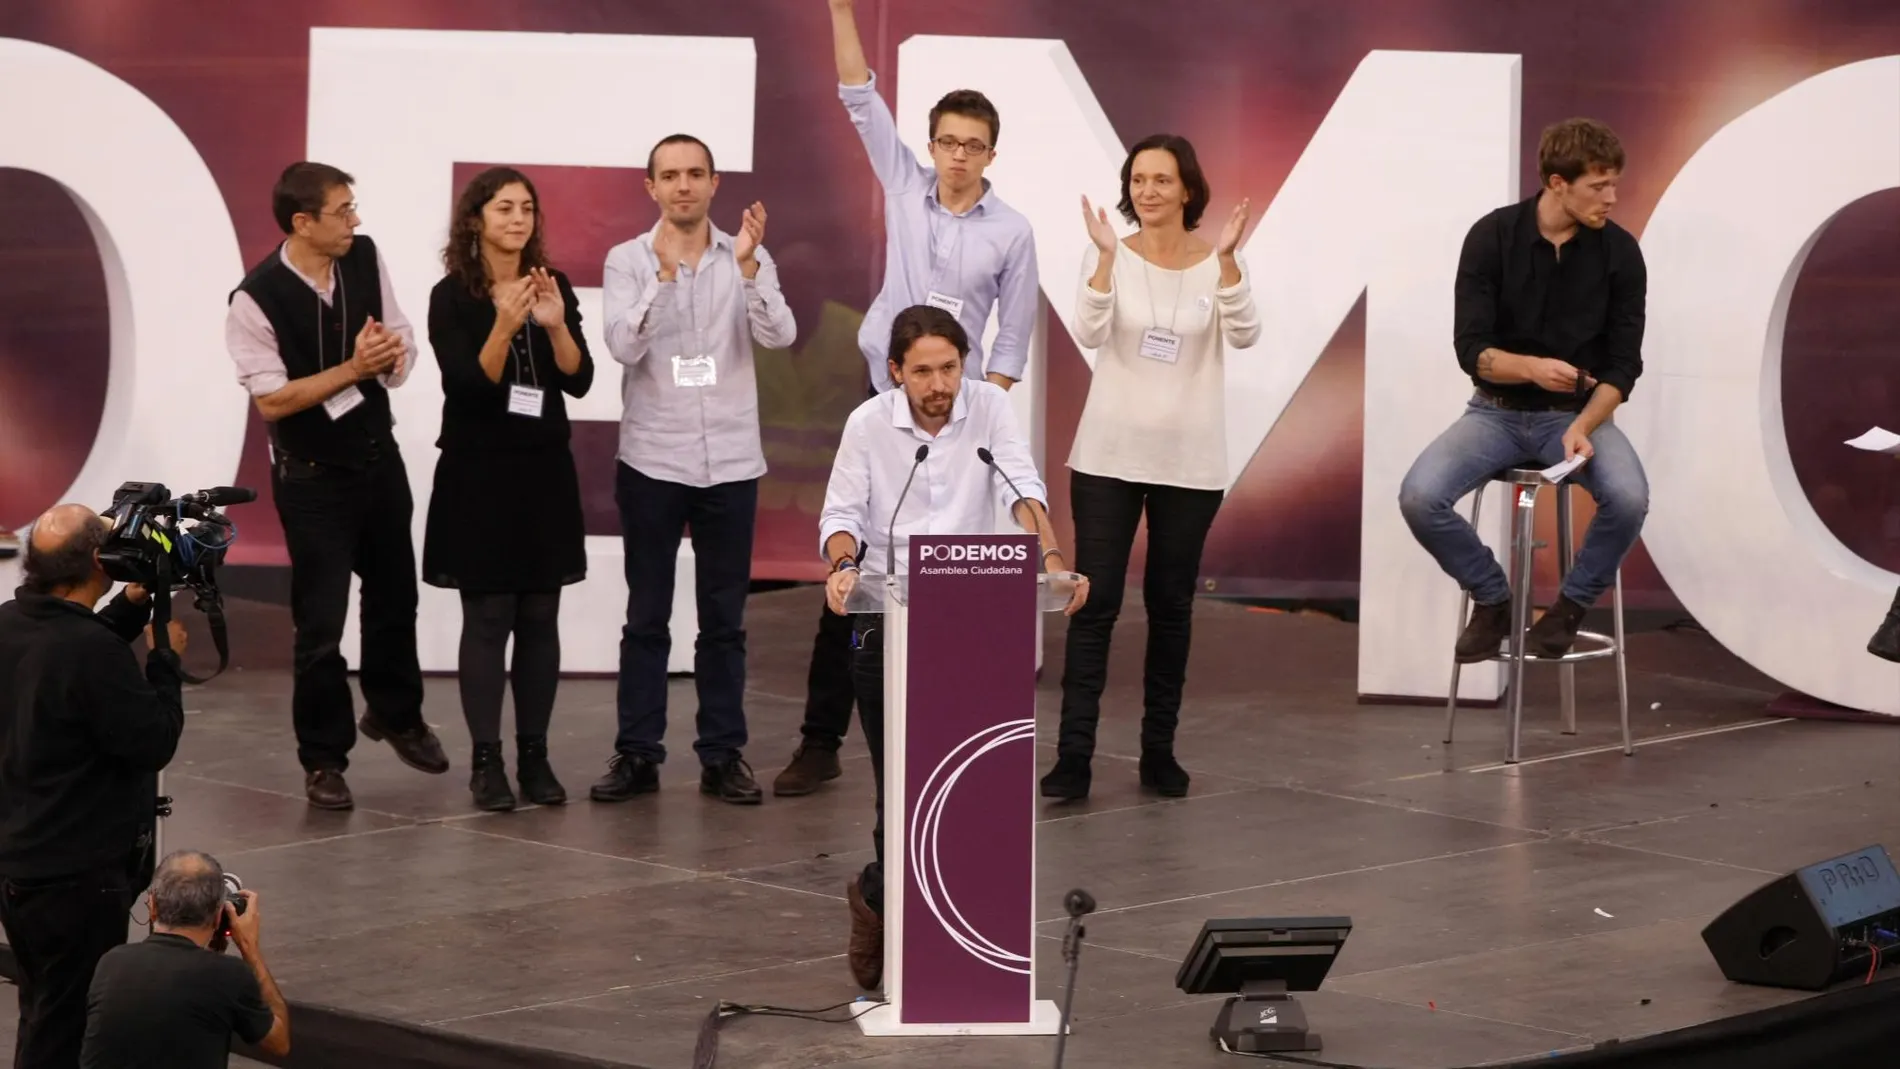 La unidad en Podemos se ha esfumado